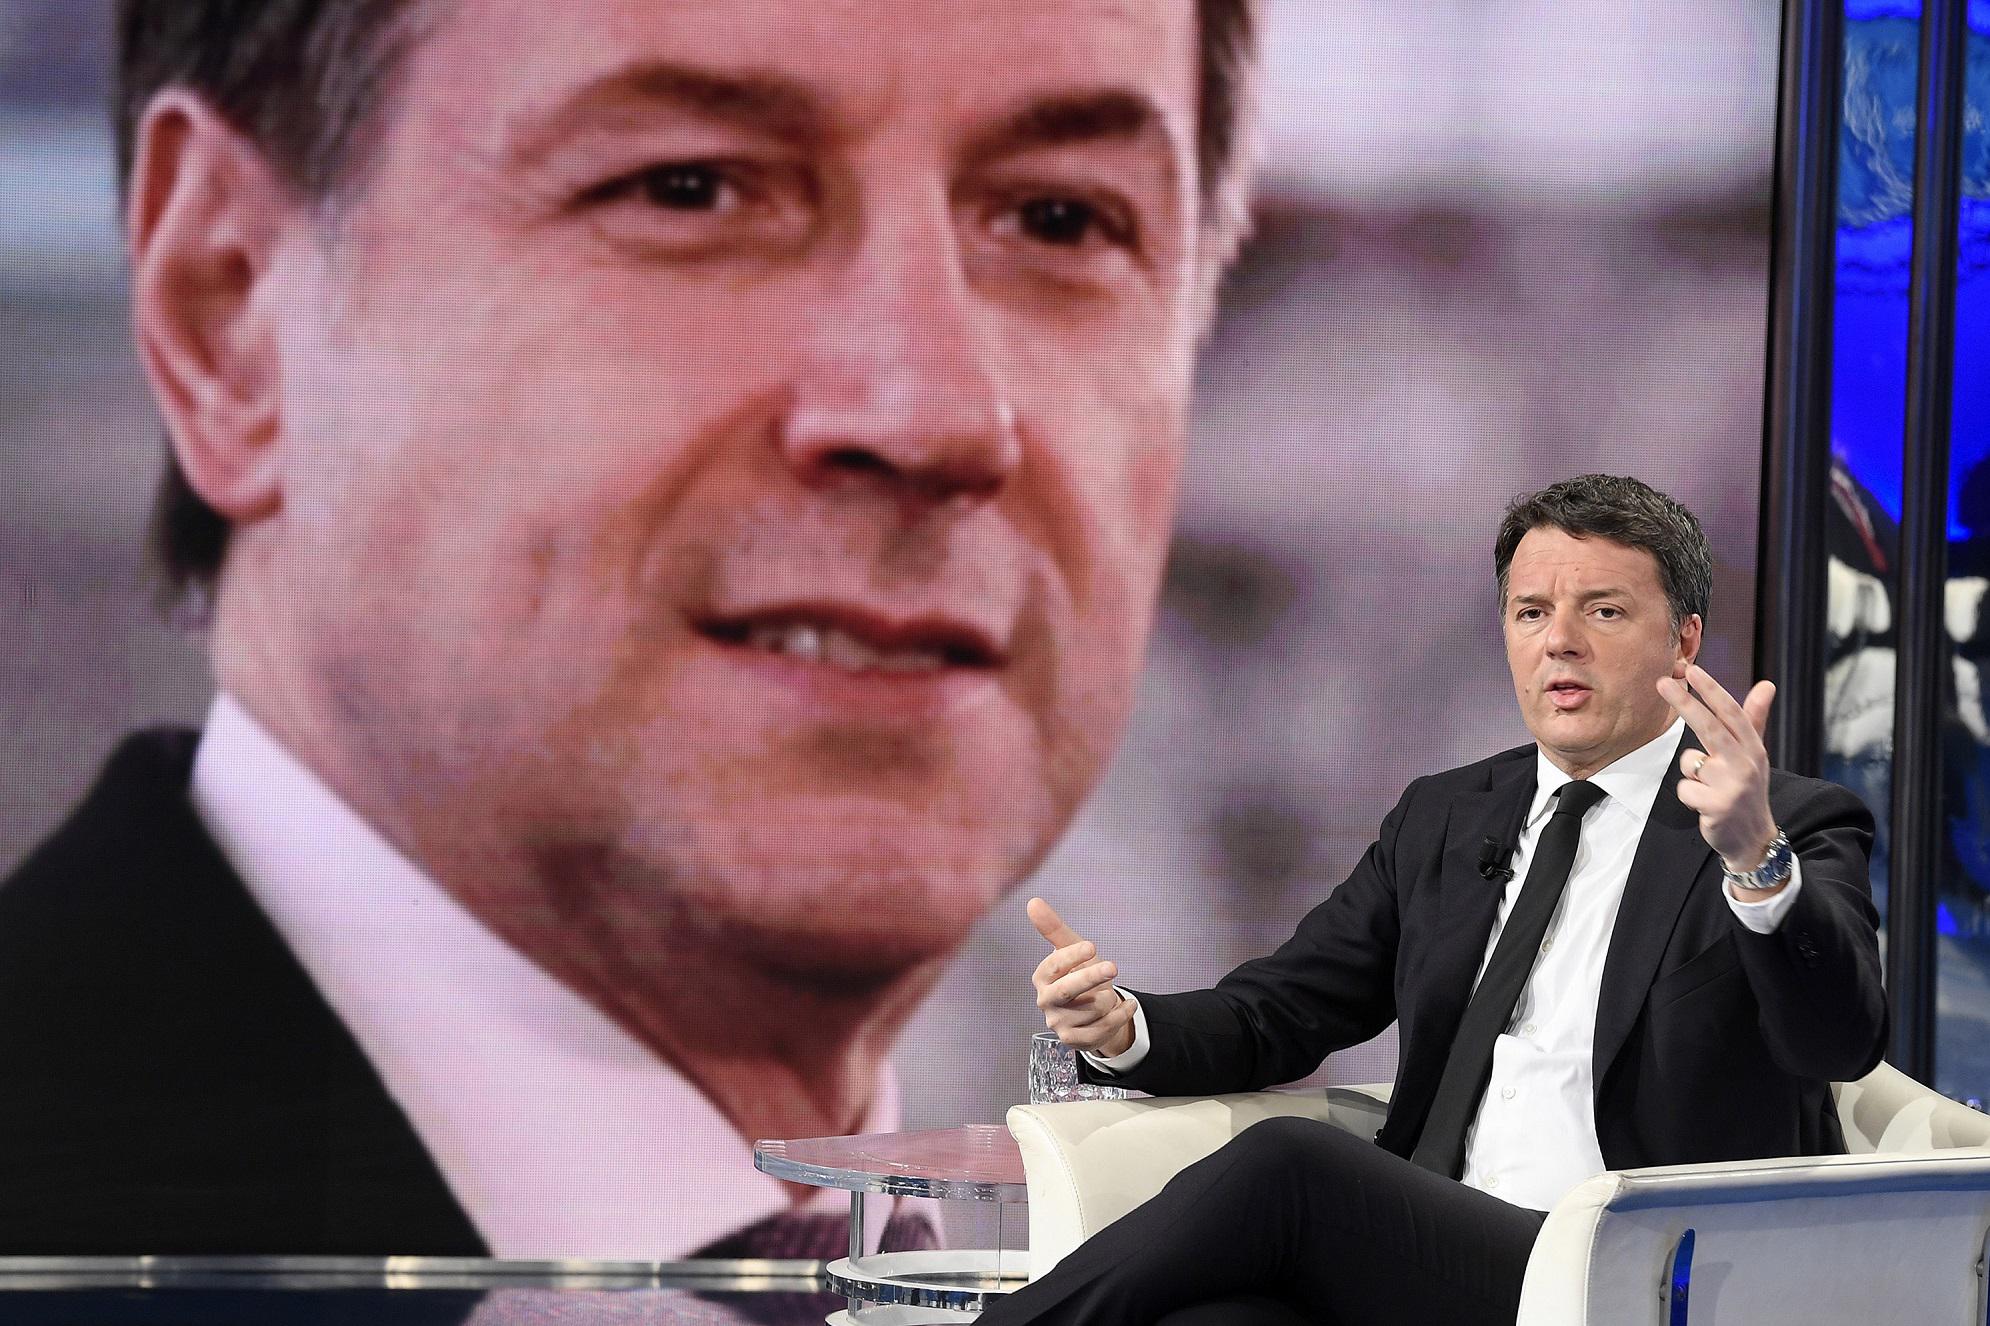 Conte a Renzi: "Sta sulle palle agli italiani di suo, non serve che mi attacchi continuamente"